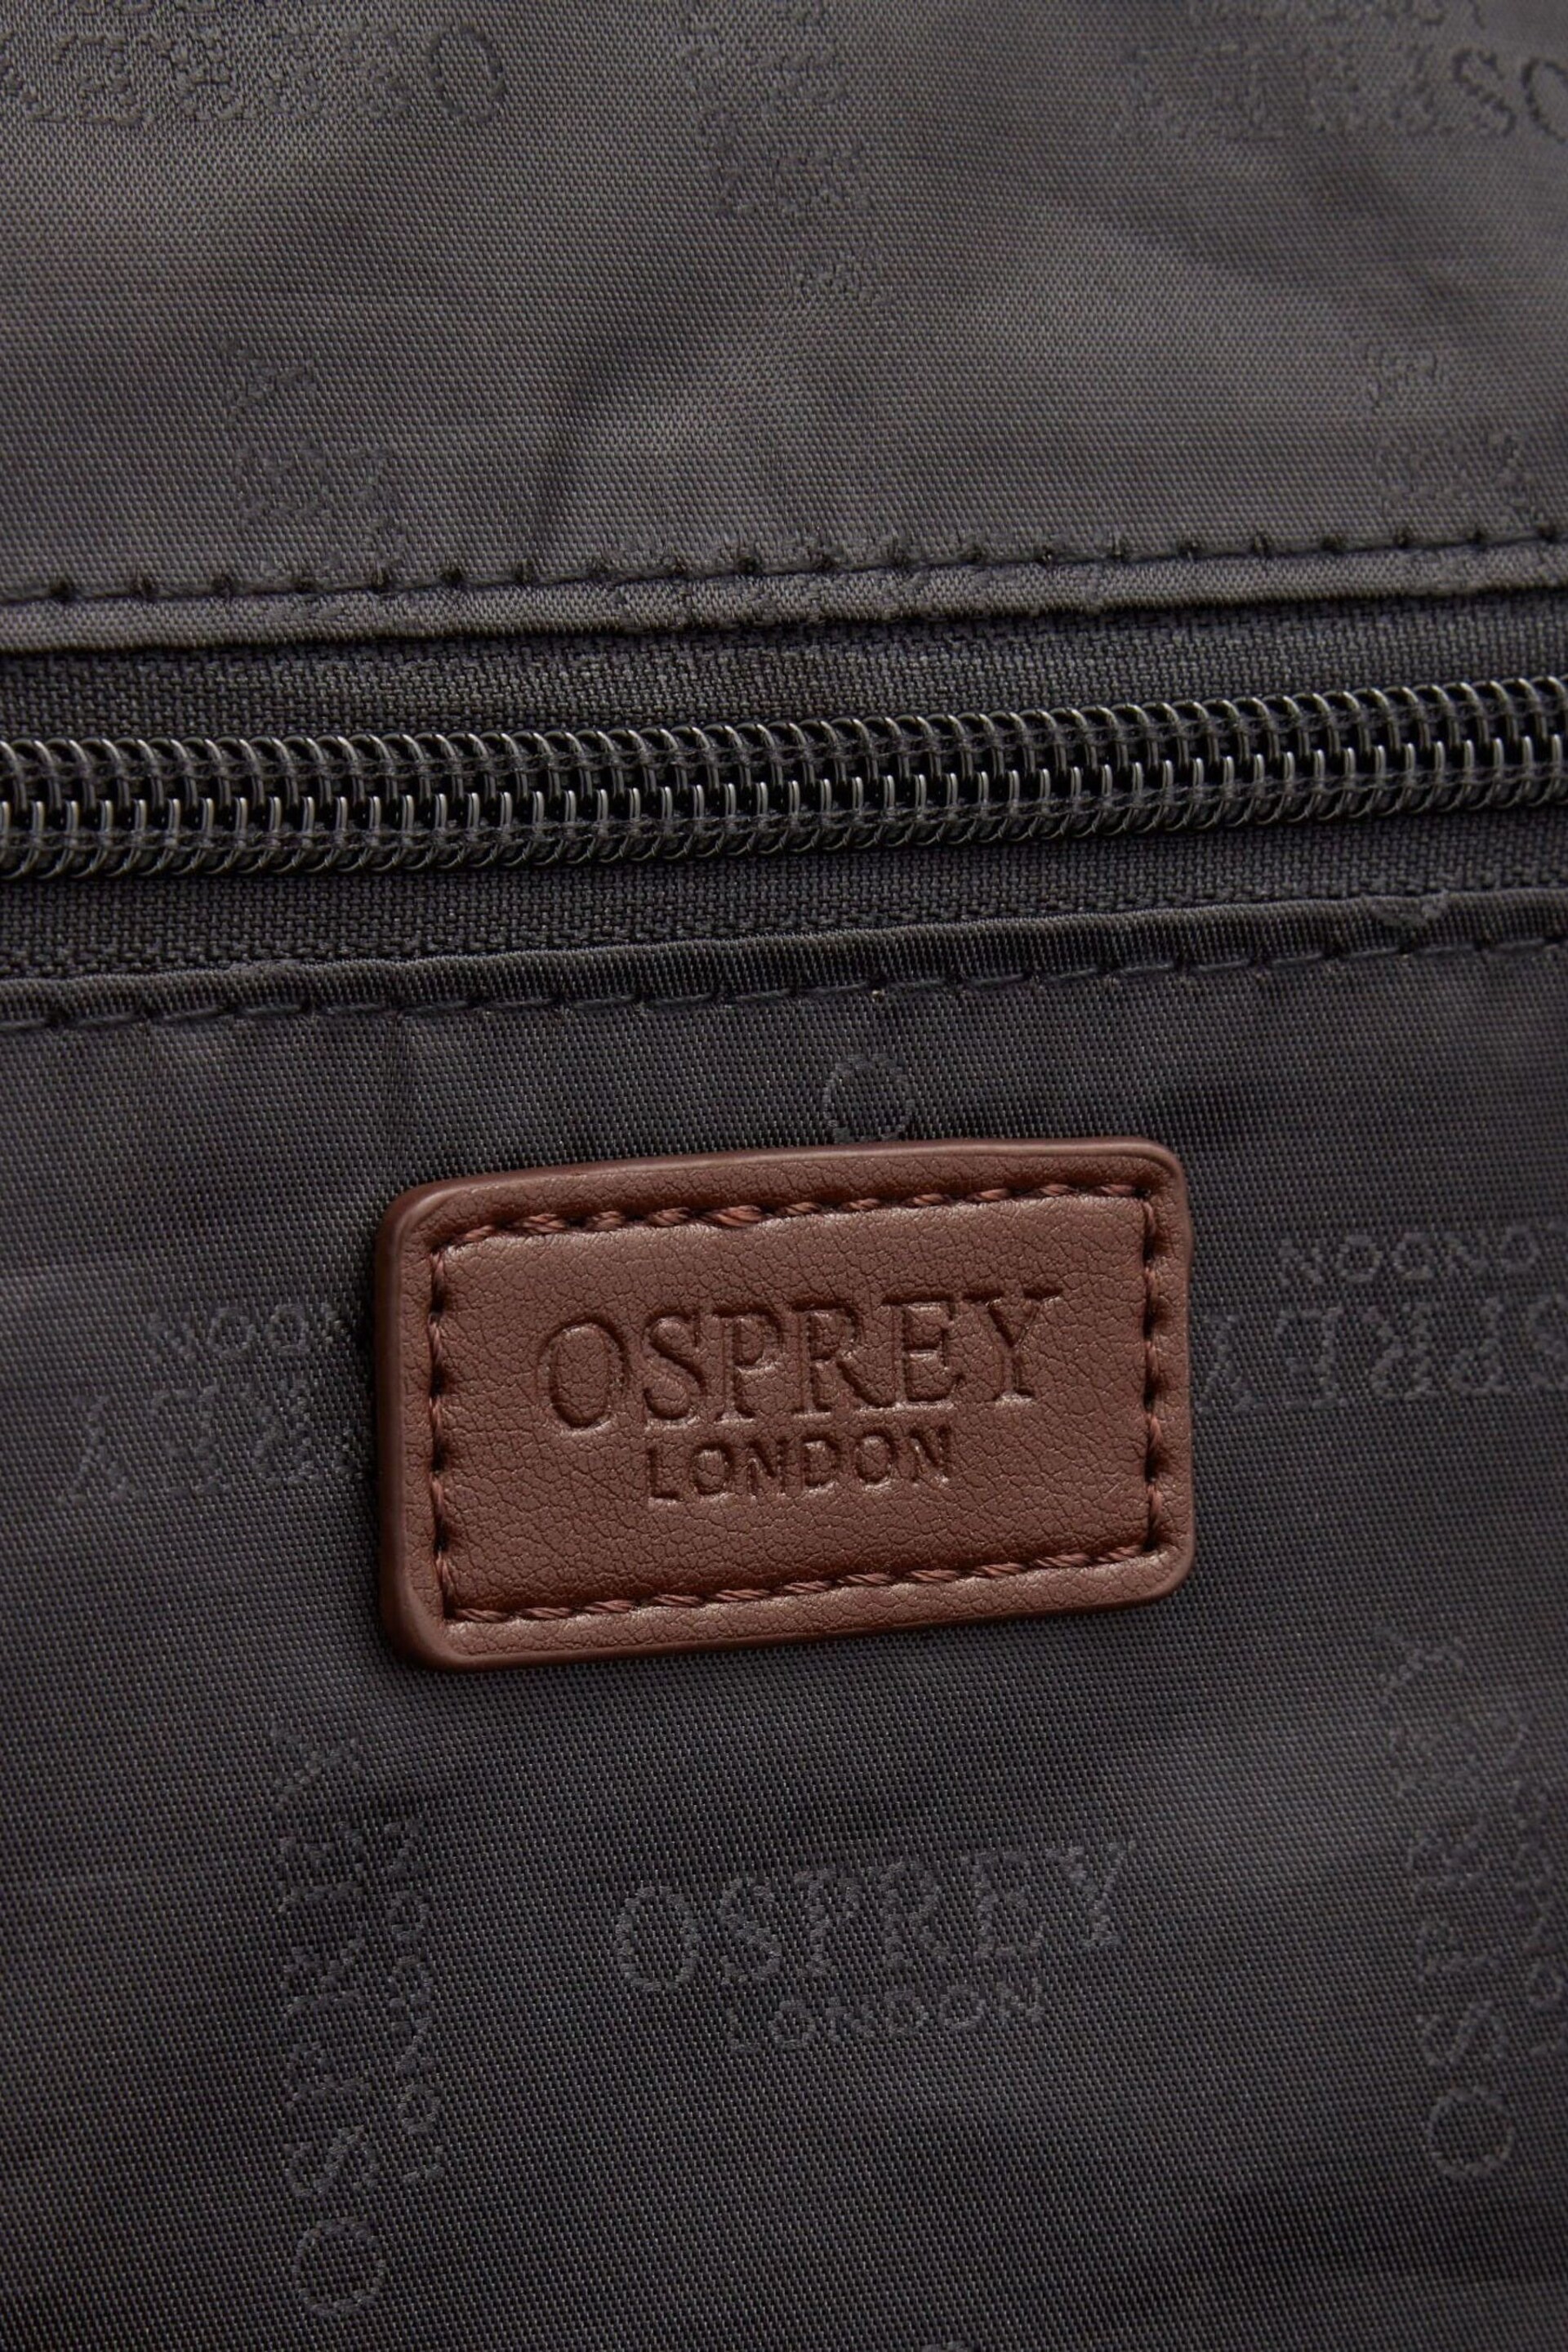 Osprey London The Extra Large Wanderer Nylon Weekender Bag - Image 4 of 6